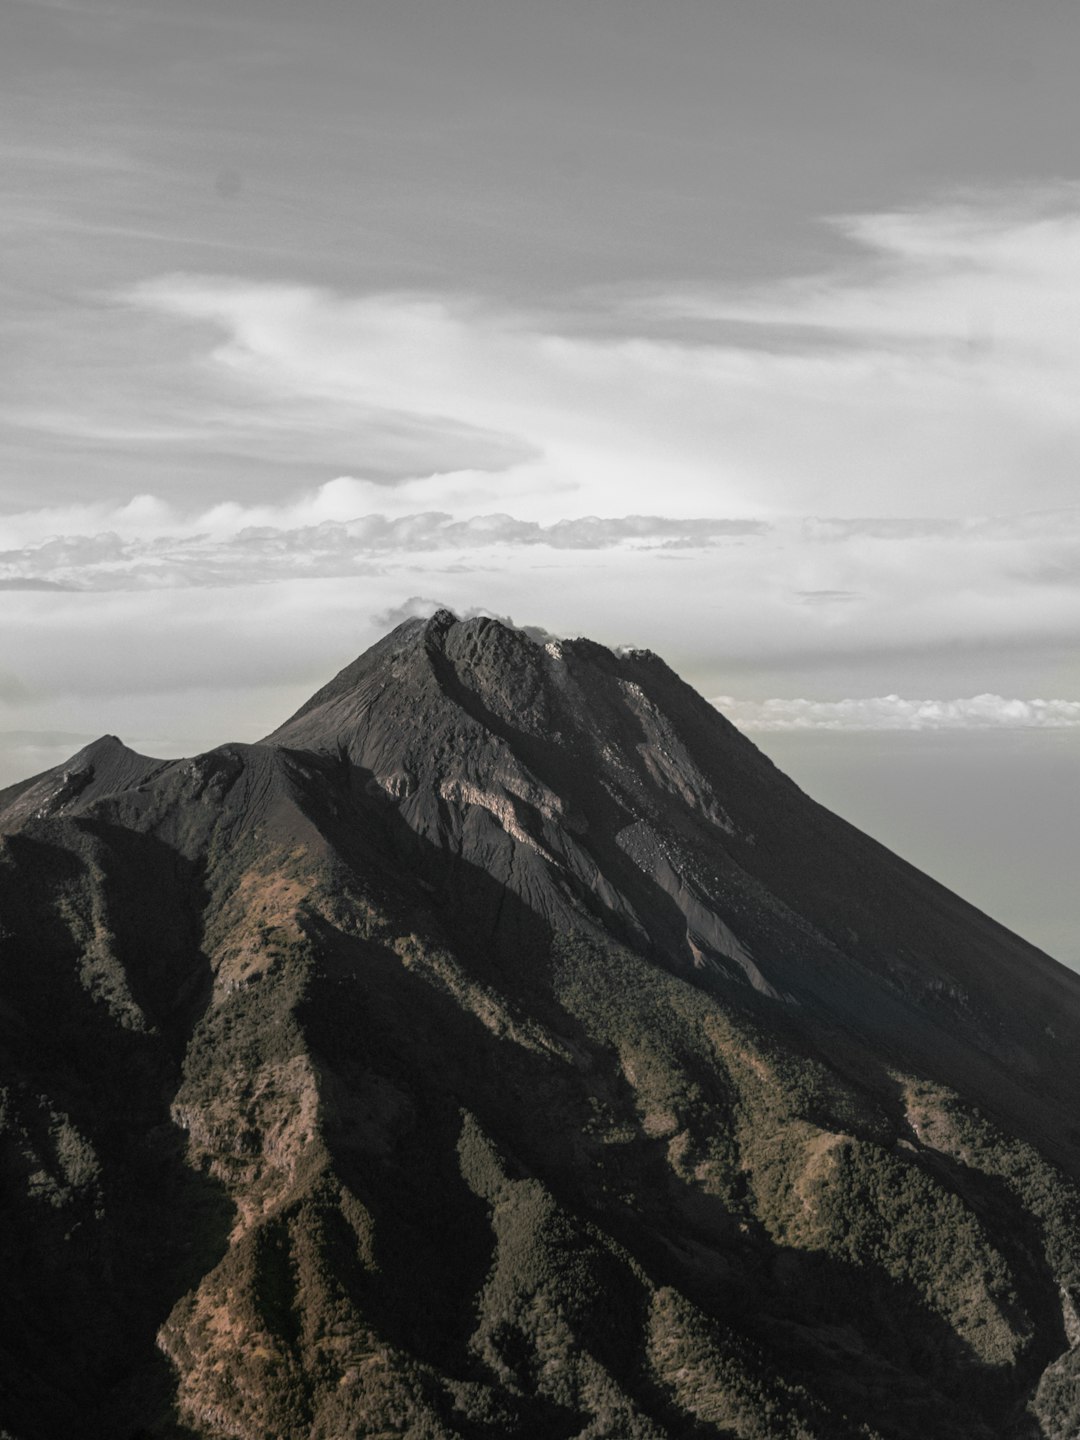 Hill photo spot Gunung Merbabu Mount Sumbing